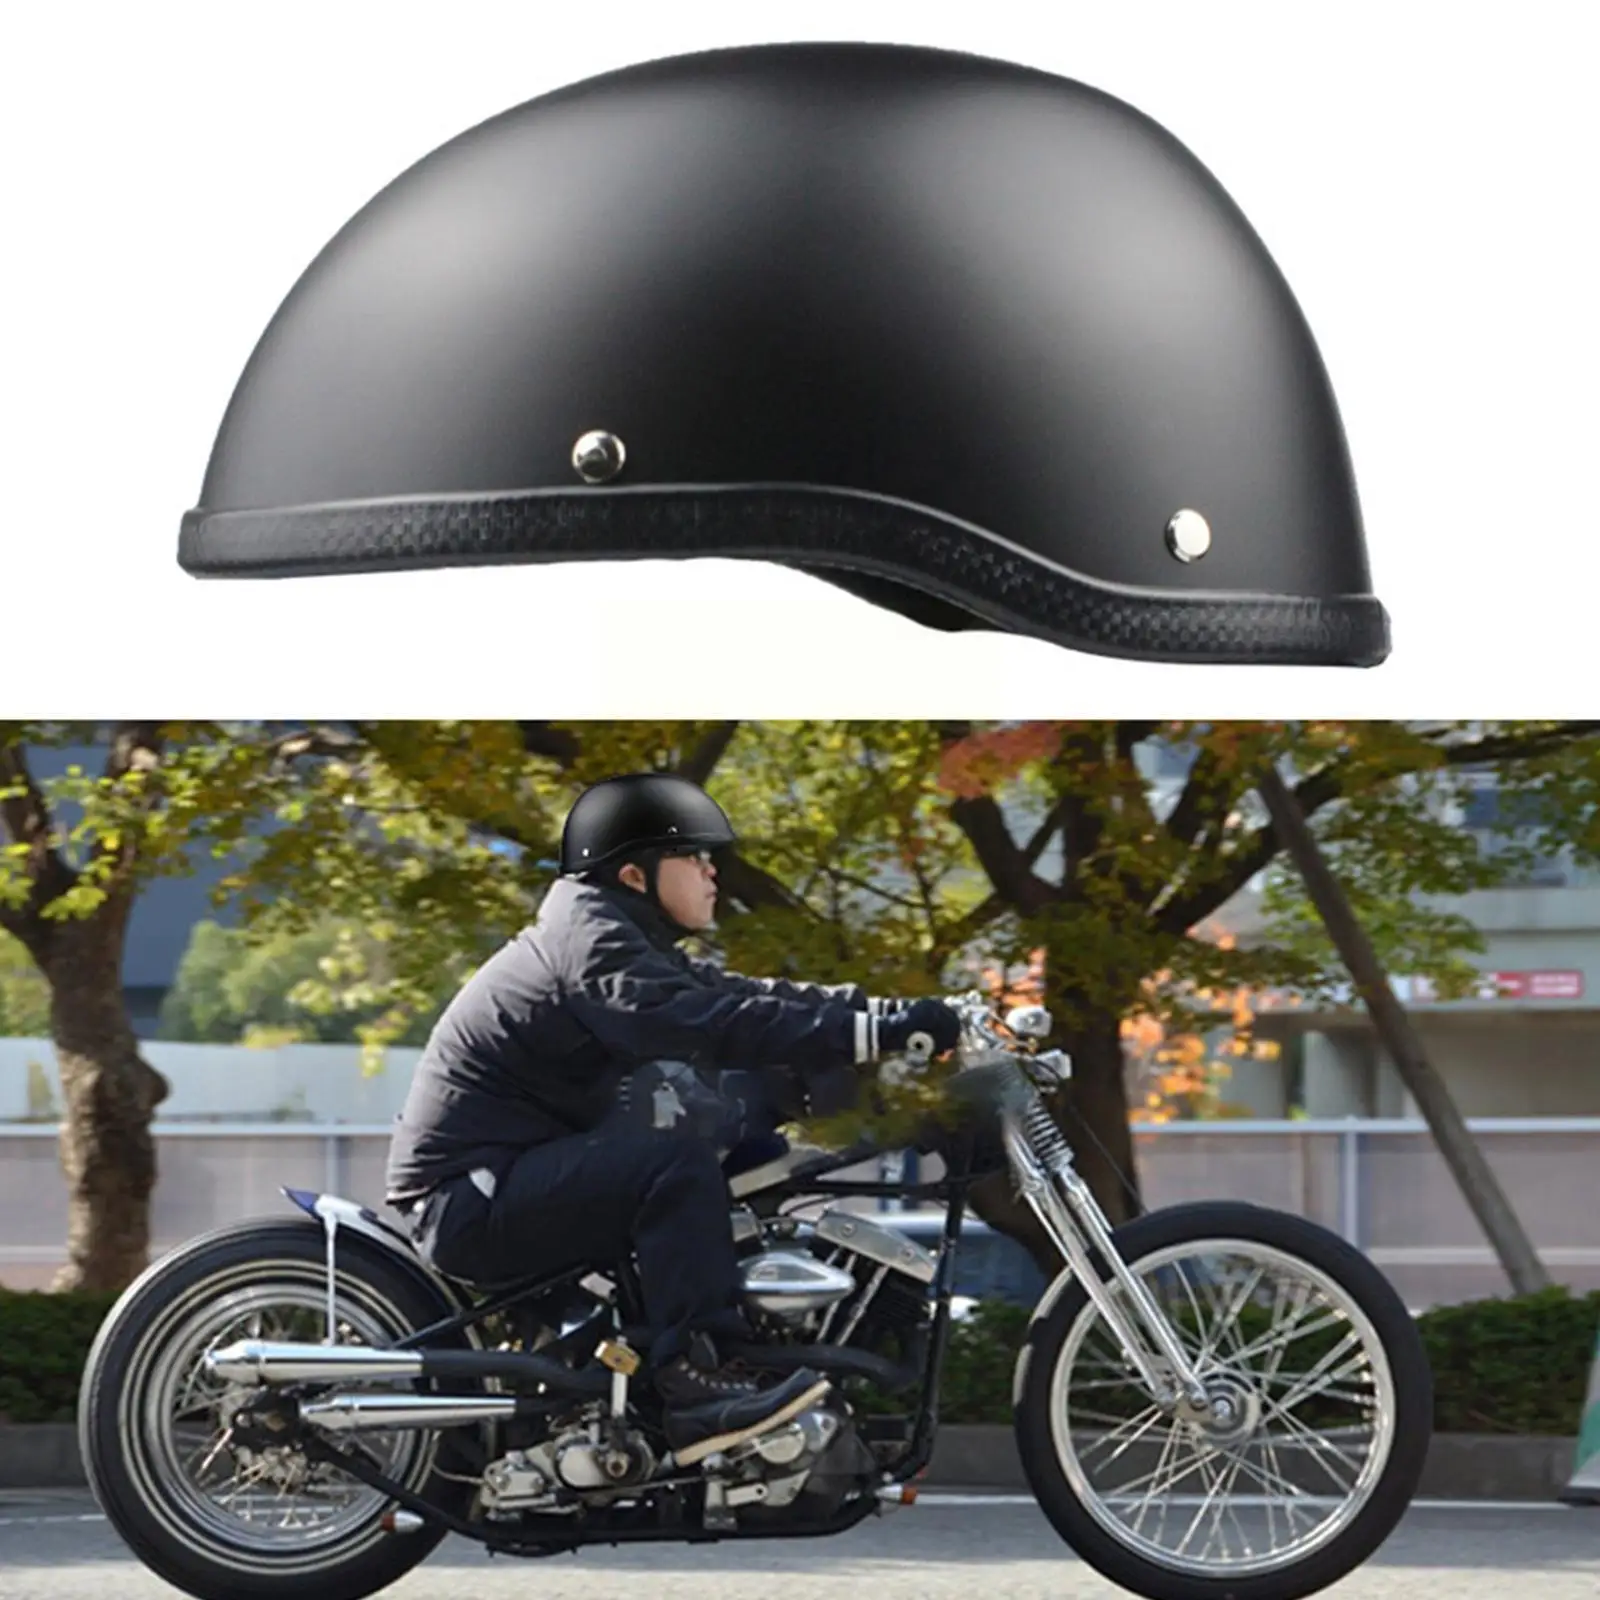 

Мотоциклетный шлем для Harley Road King Softail Sporster 883, полулицевой Электрический мотоцикл, аксессуары для мотоциклов C7Y4